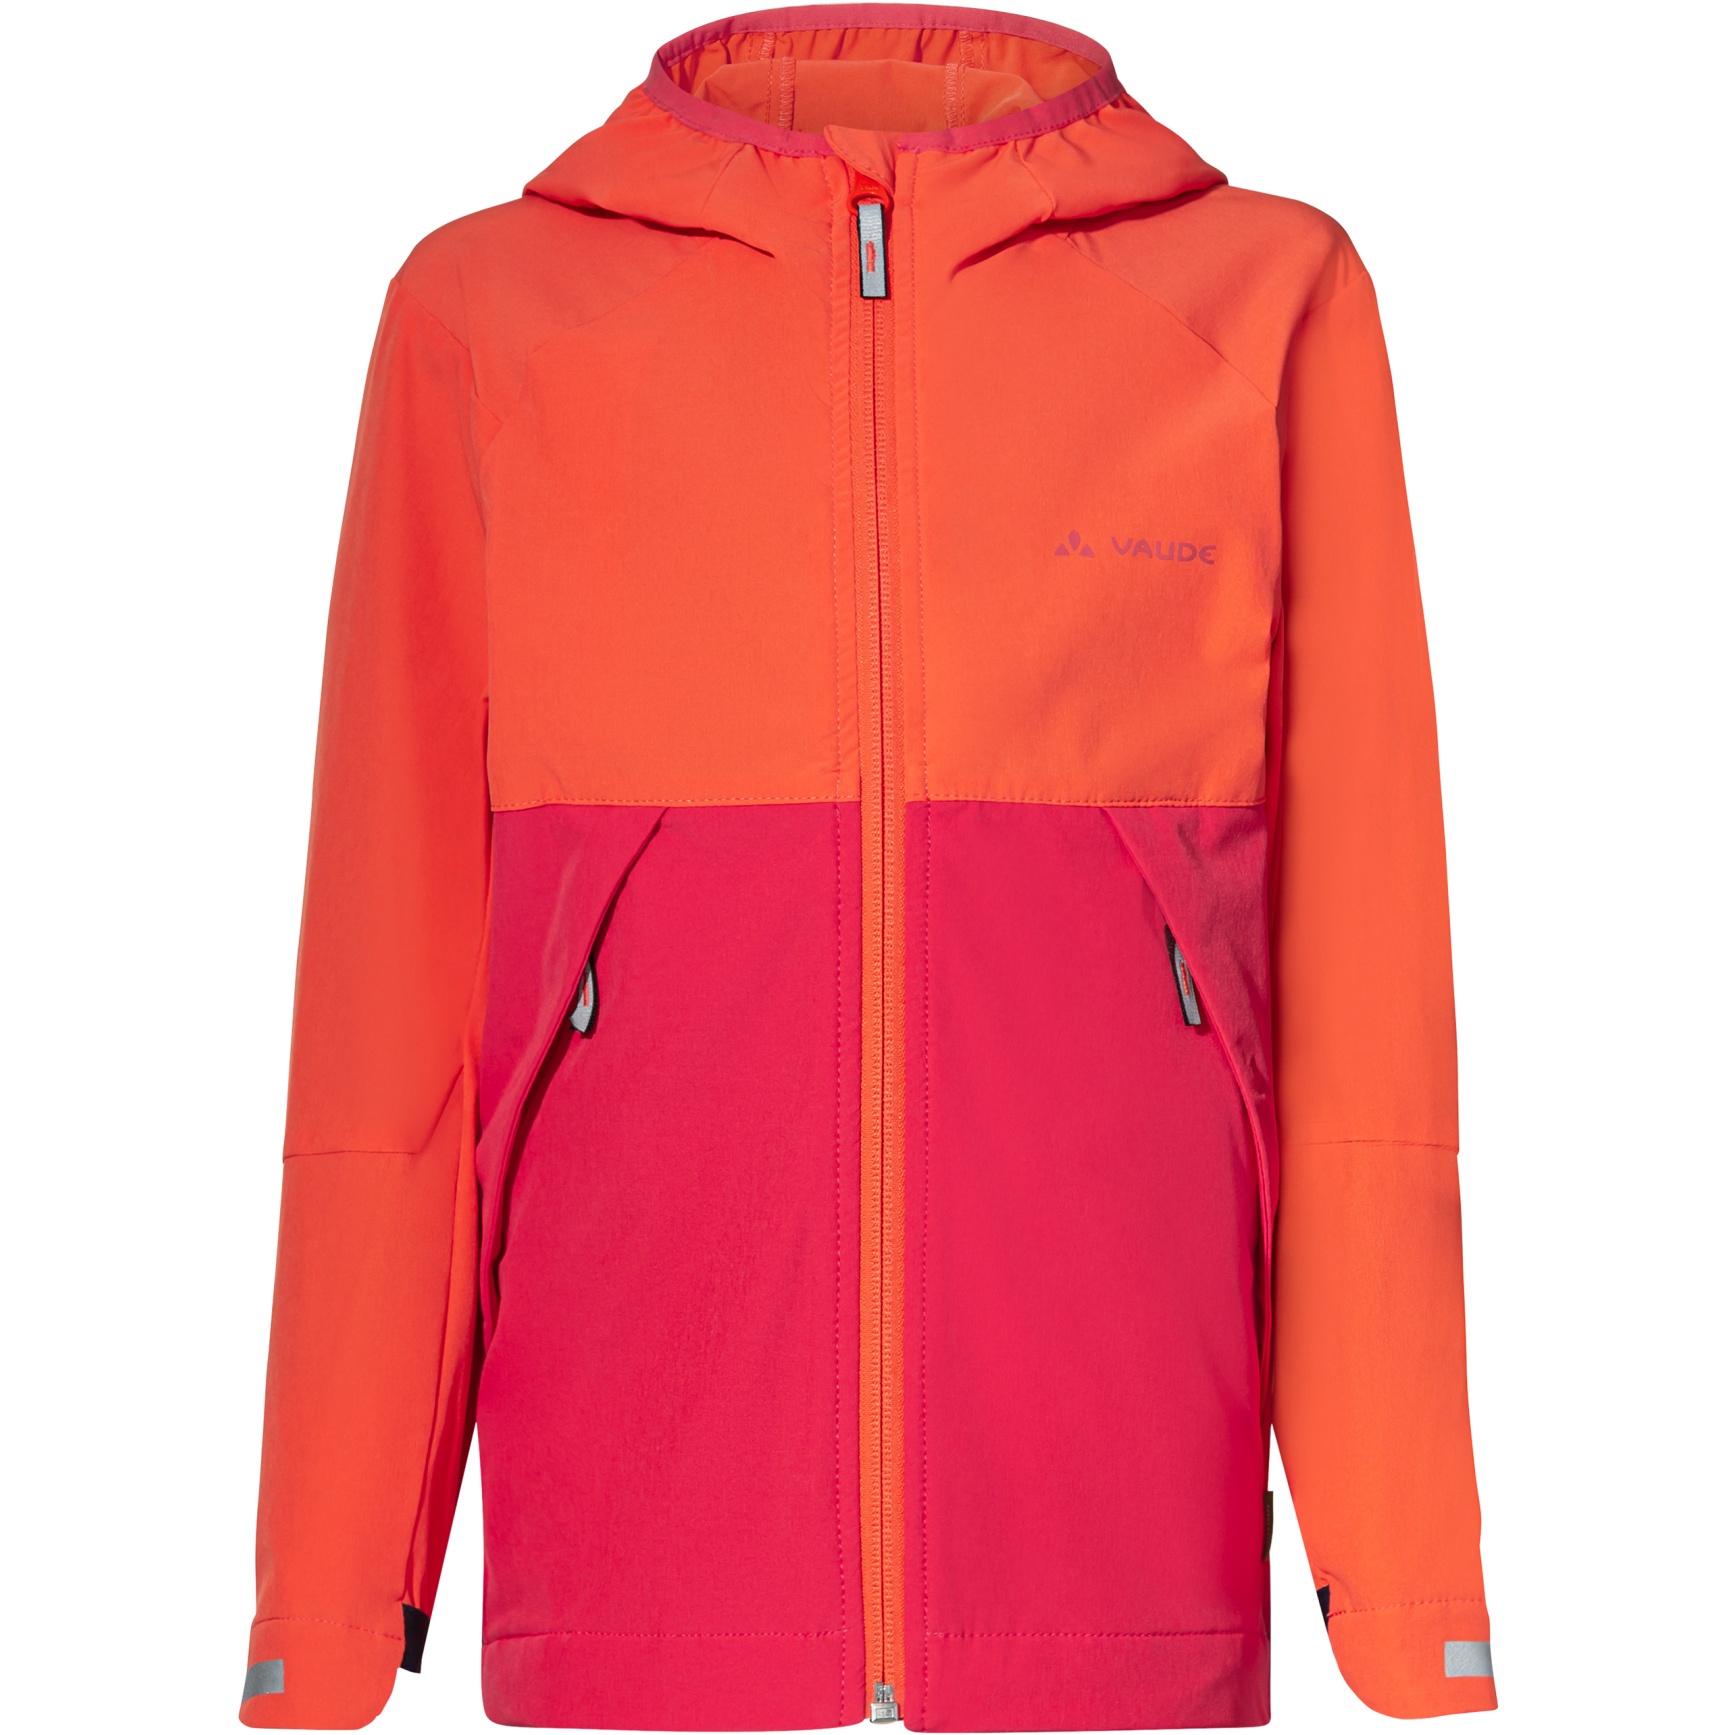 Produktbild von Vaude Moab Stretch Jacke Kinder - bright pink/orange